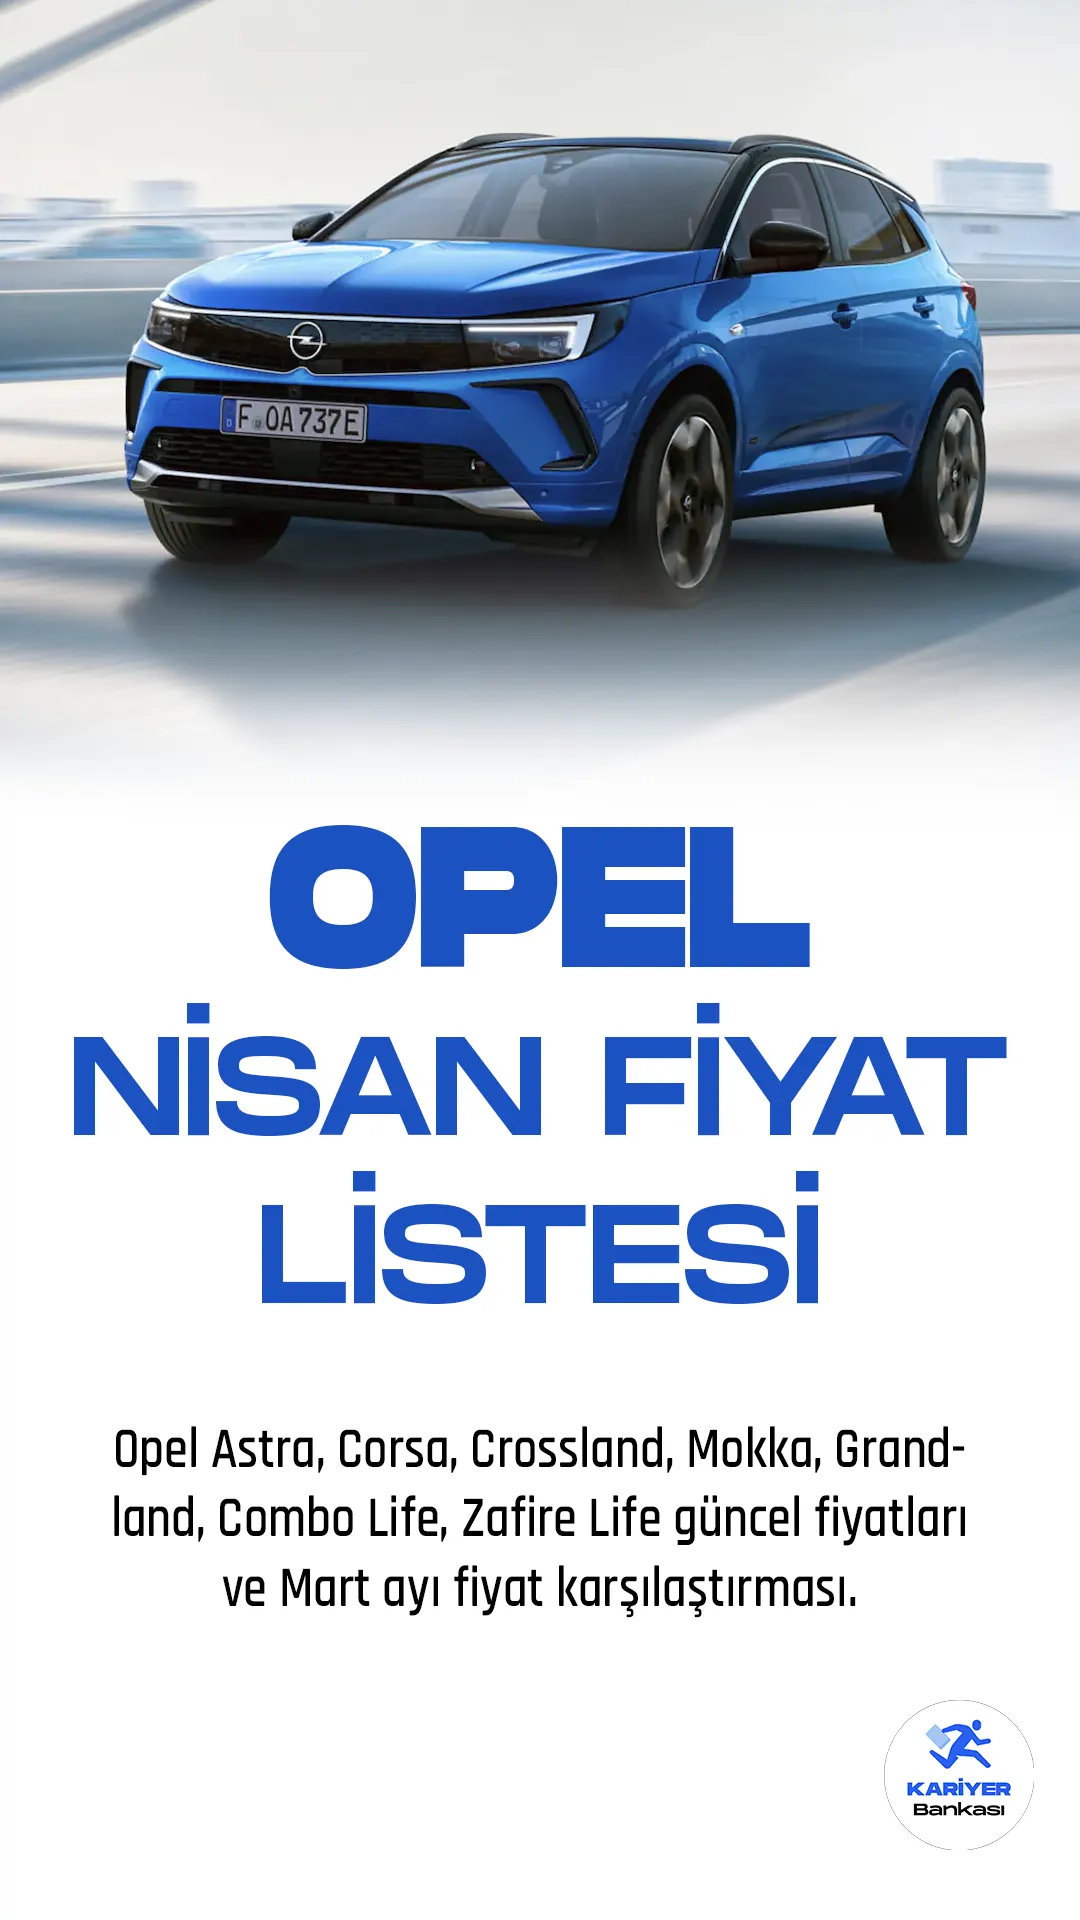 Opel Nisan 2023 Fiyat Listesi Yayımlandı! Opel, otomotiv endüstrisinin önde gelen markalarından biri olarak, yıllardır müşterilerine kaliteli araçlar sunuyor. Firma, sürdürülebilirlik ve yenilikçi teknolojilere odaklanarak müşterilerine en iyi deneyimi yaşatmak için sürekli olarak kendini geliştiriyor.